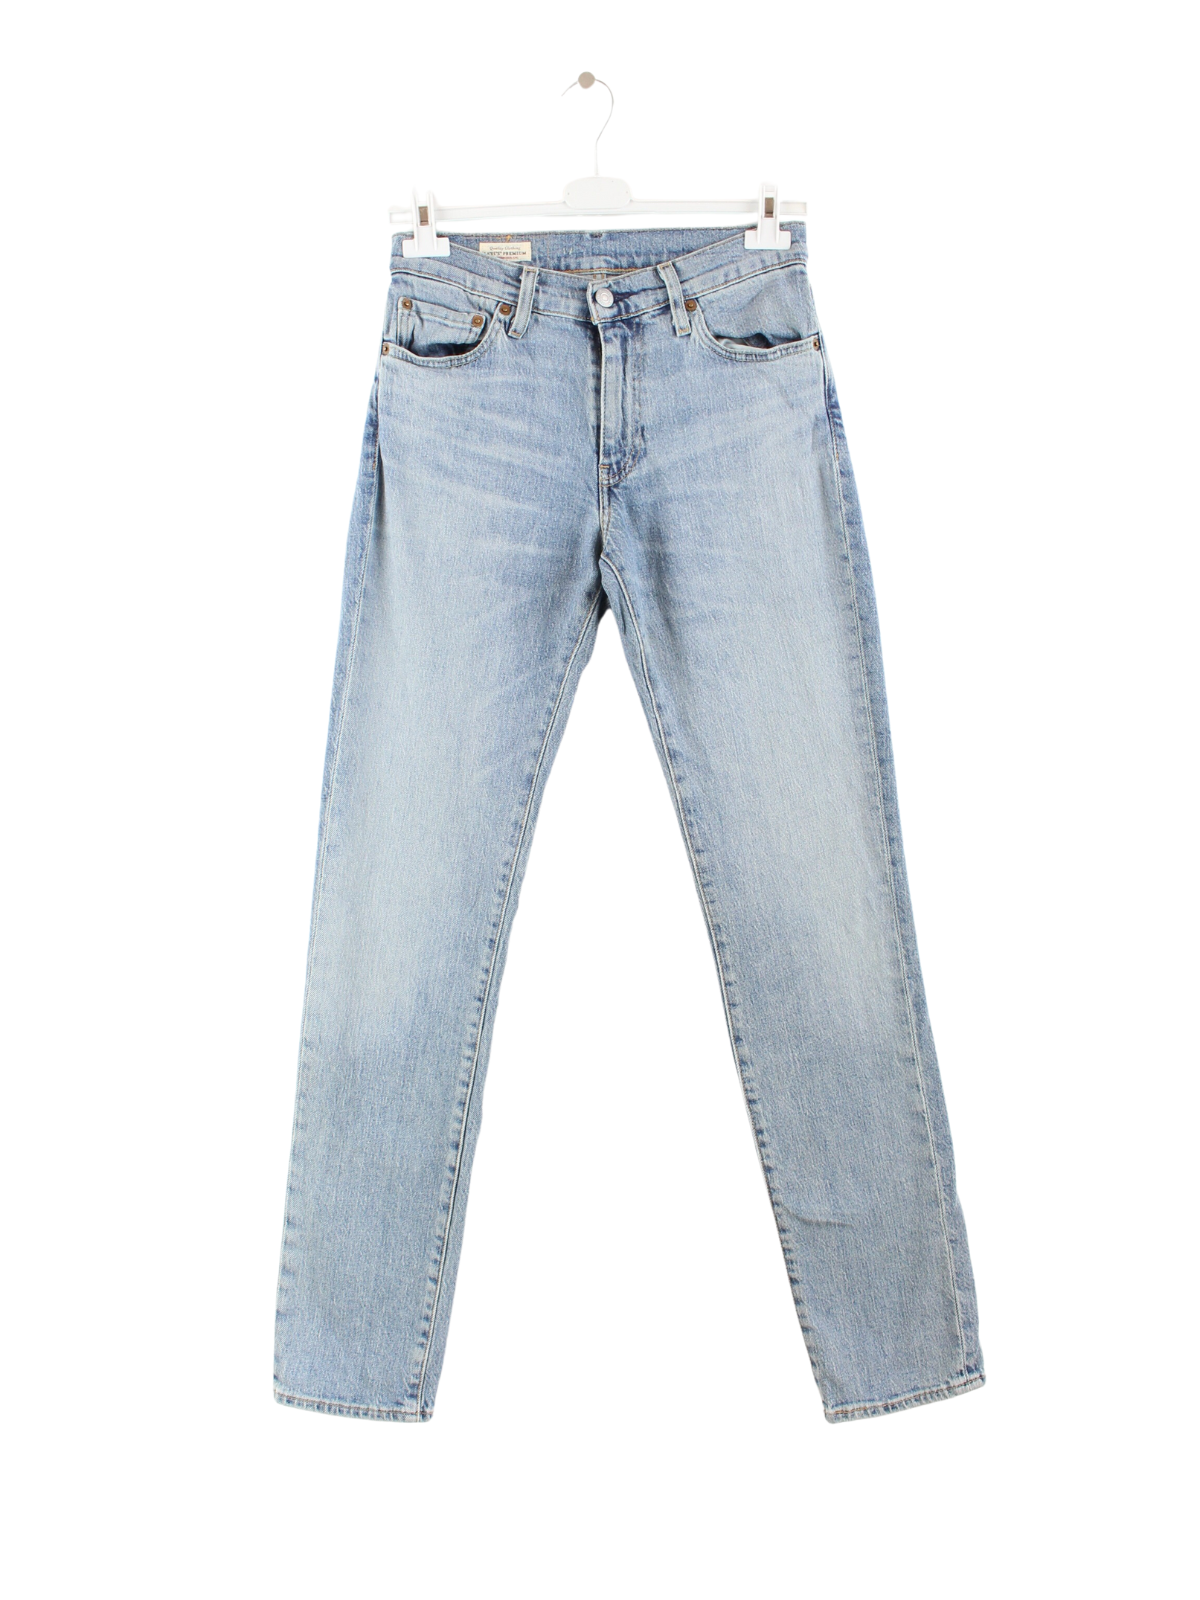 Levi's 511 Big E Jeans Blue w28 L32 – Peeces